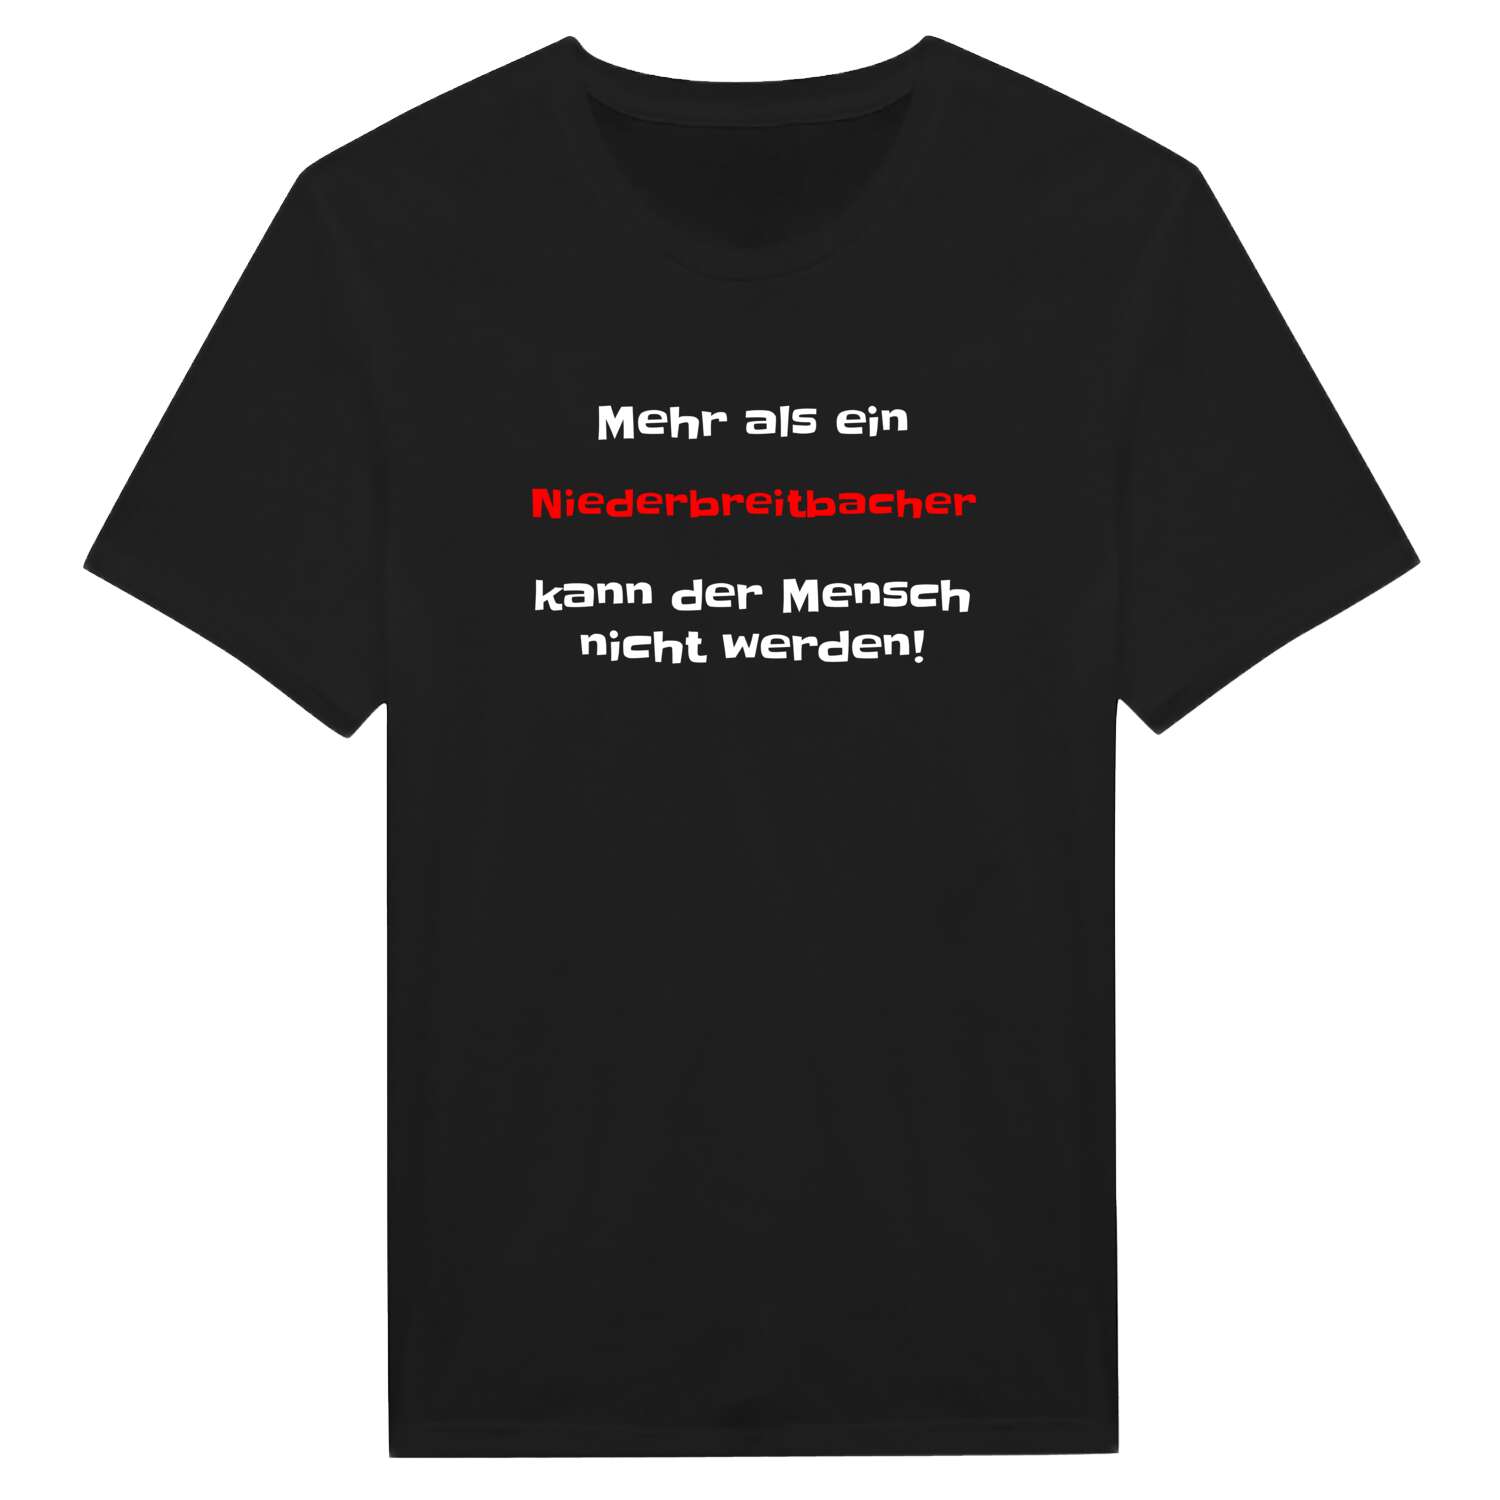 Niederbreitbach T-Shirt »Mehr als ein«